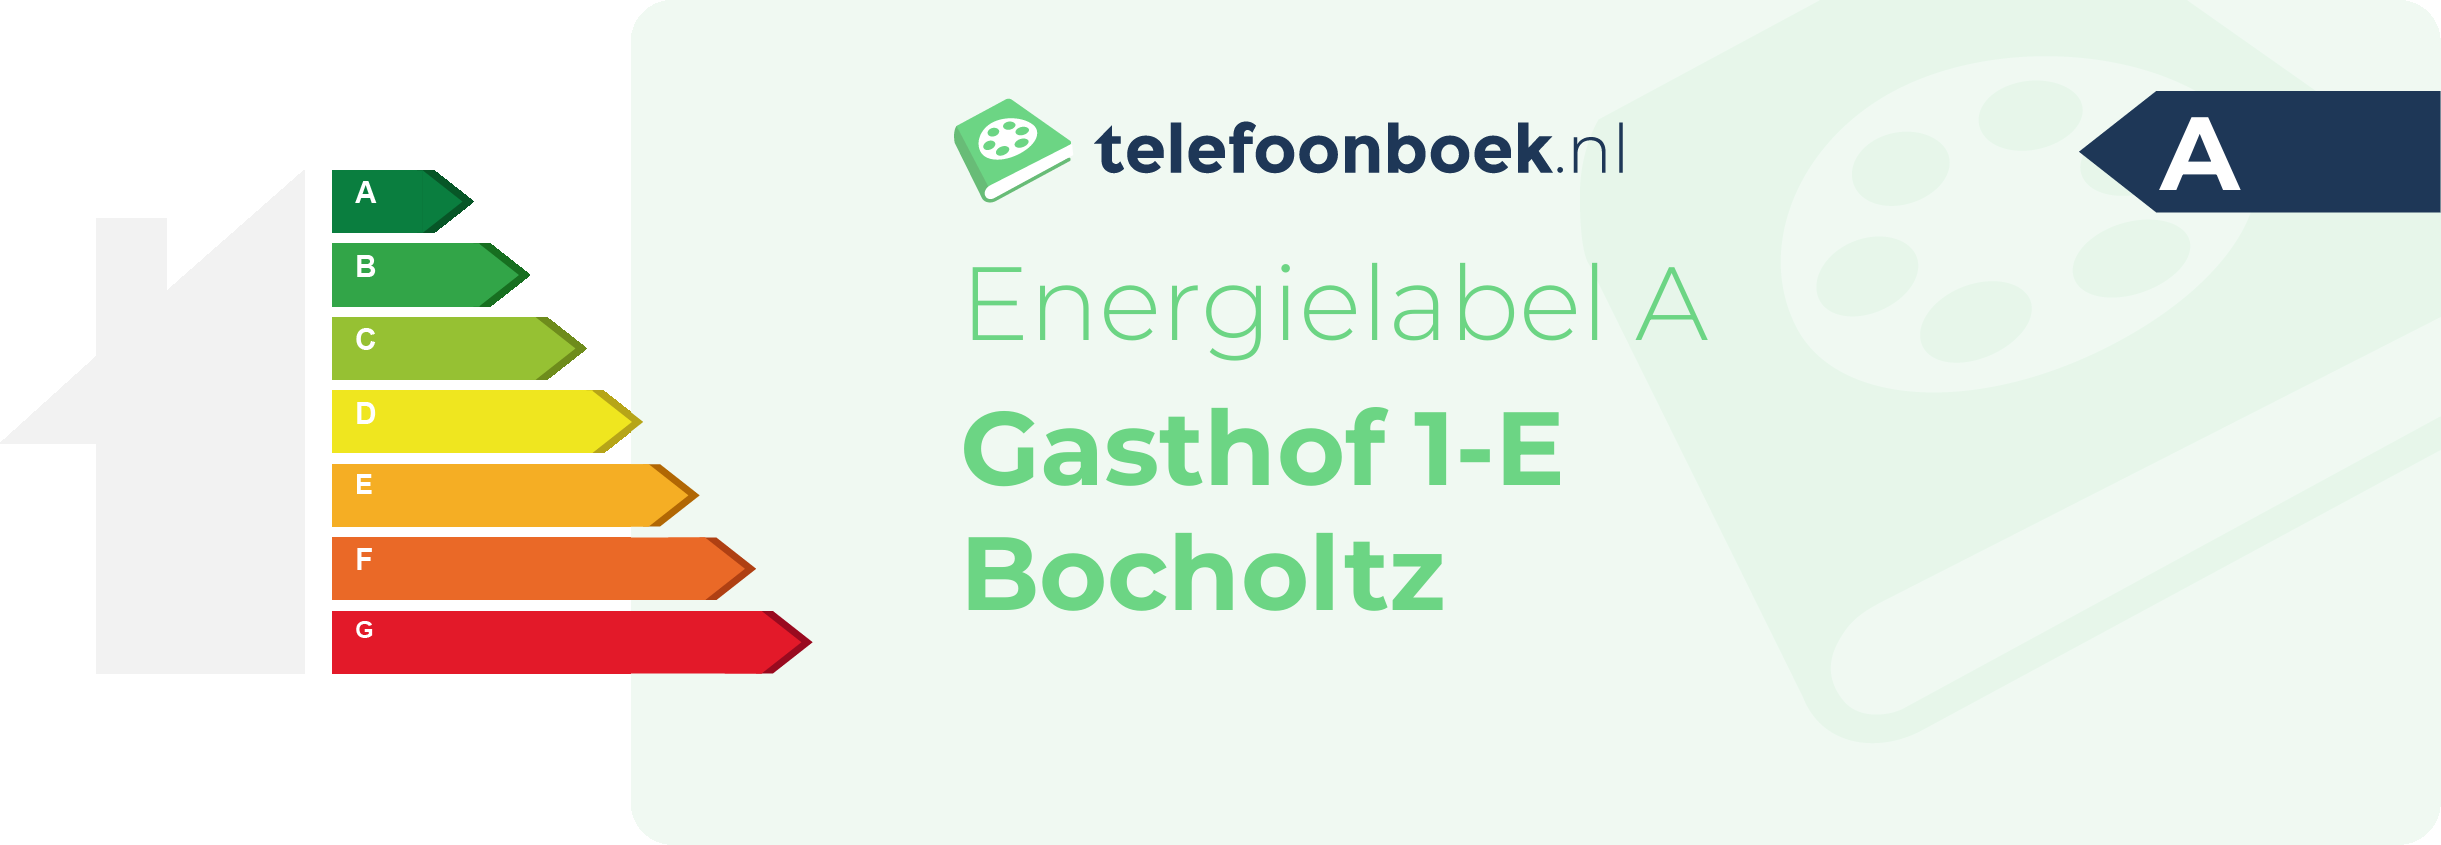 Energielabel Gasthof 1-E Bocholtz